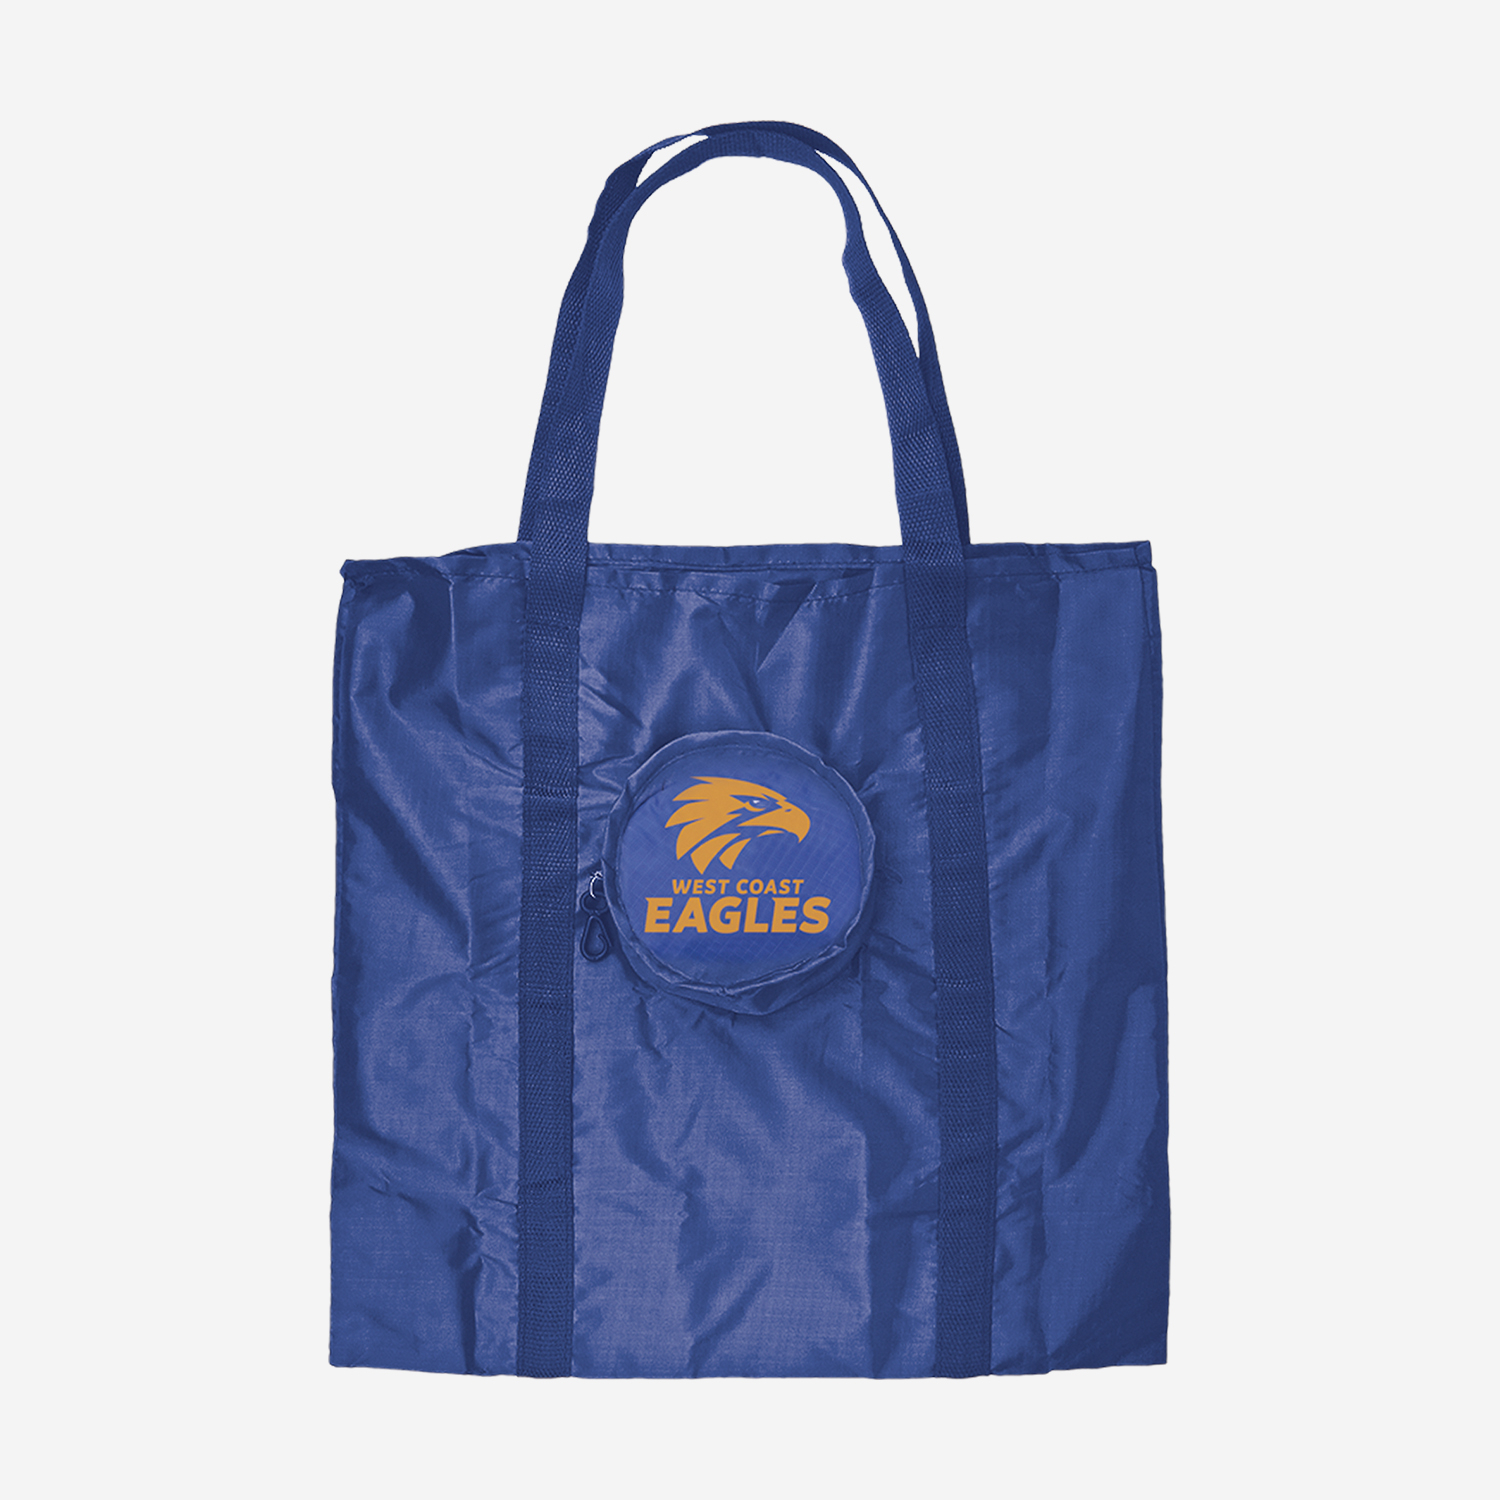 AFL Foldable Tote Bag Eagles